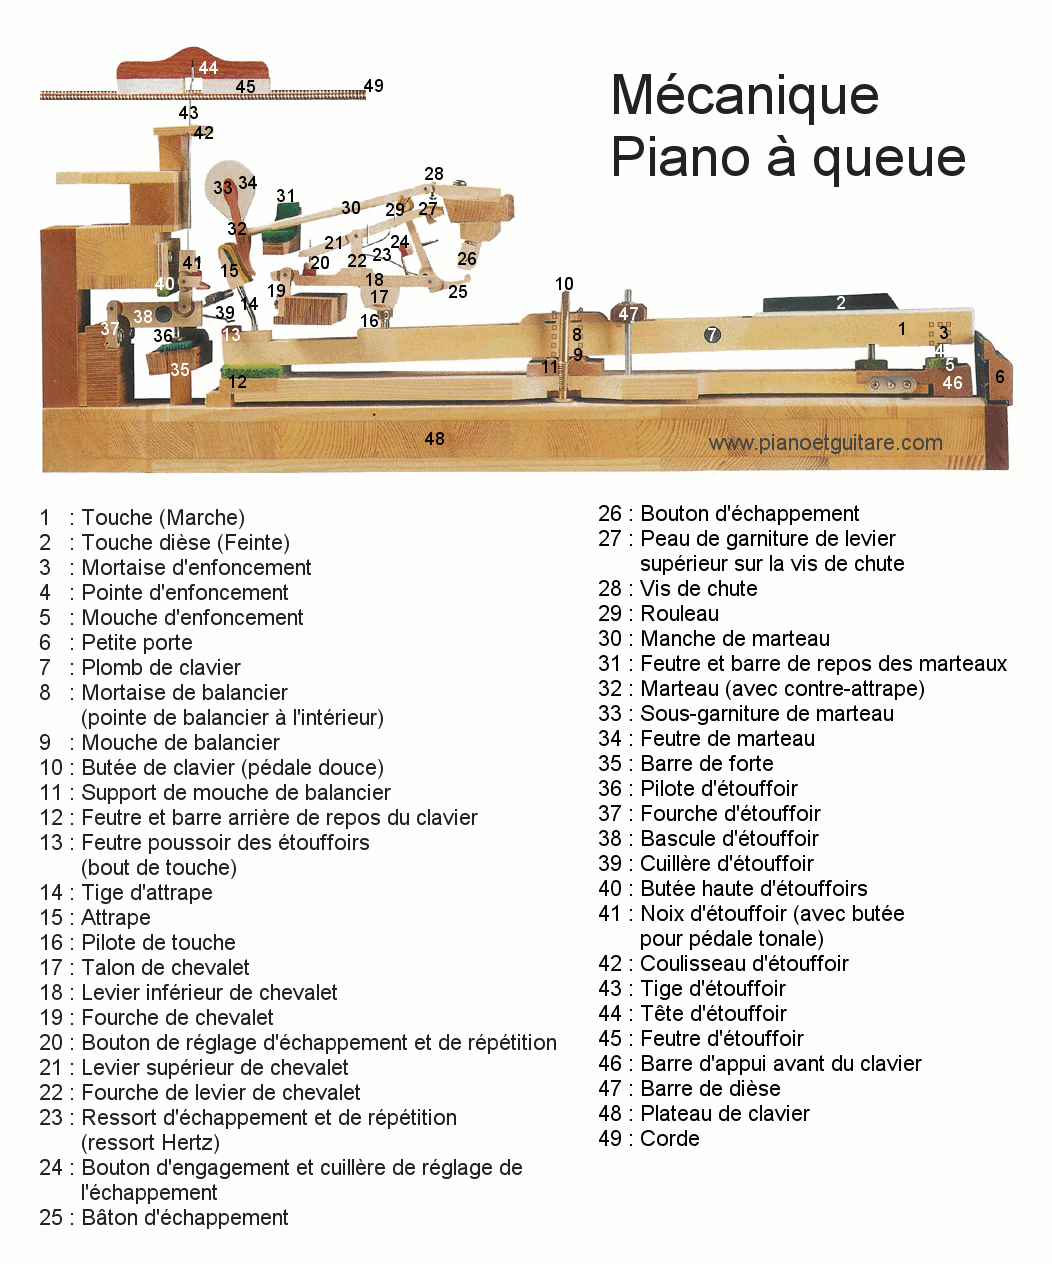 Mécanique piano à queue